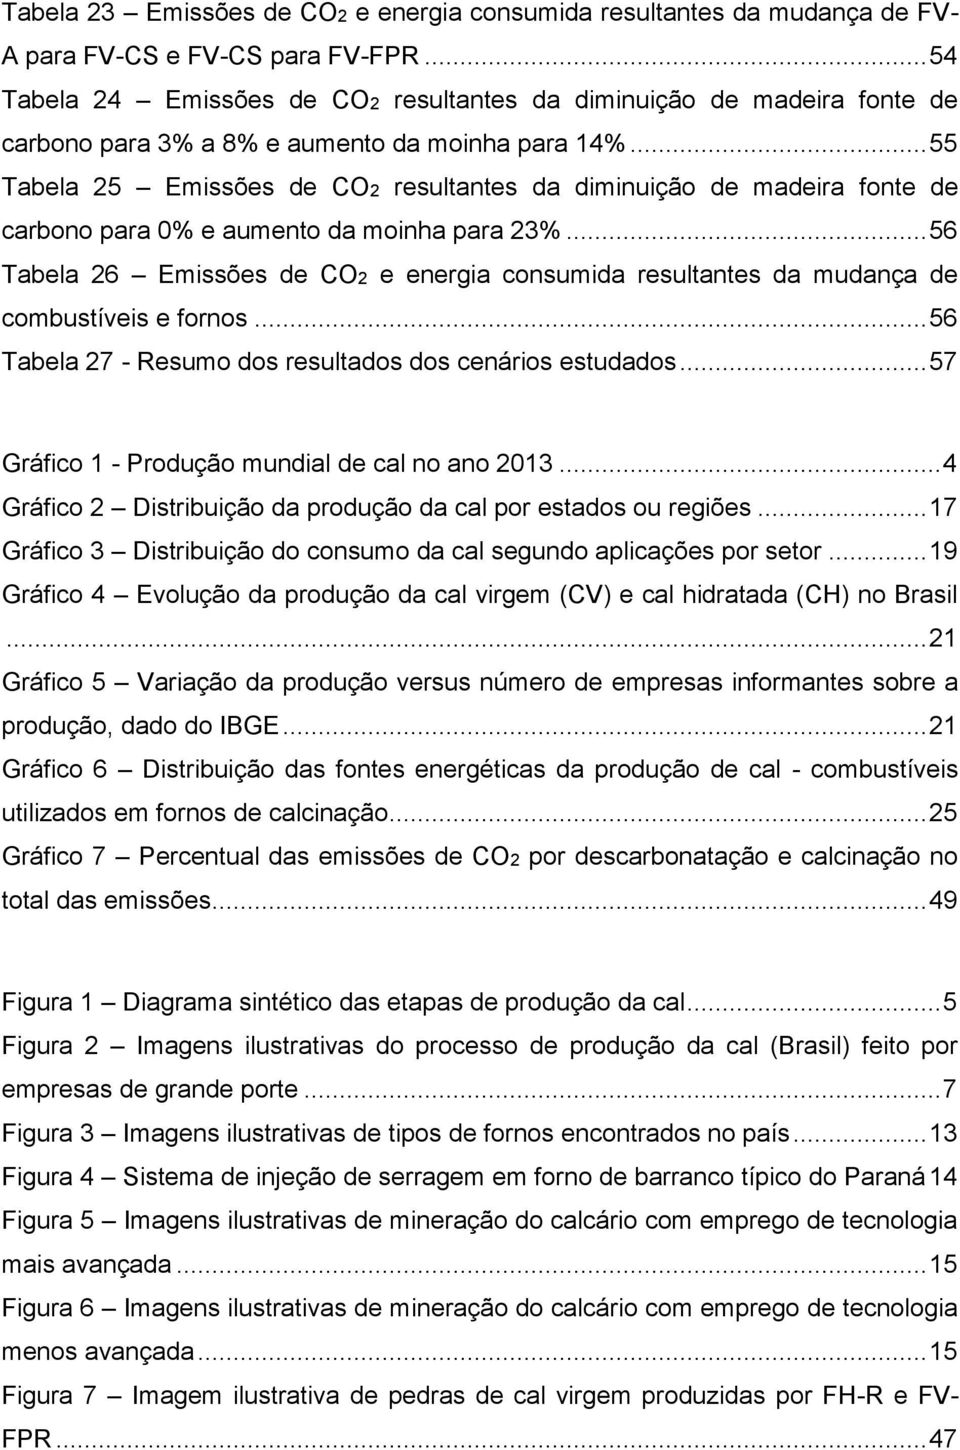 .. 55 Tabela 25 Emissões de CO2 resultantes da diminuição de madeira fonte de carbono para 0% e aumento da moinha para 23%.